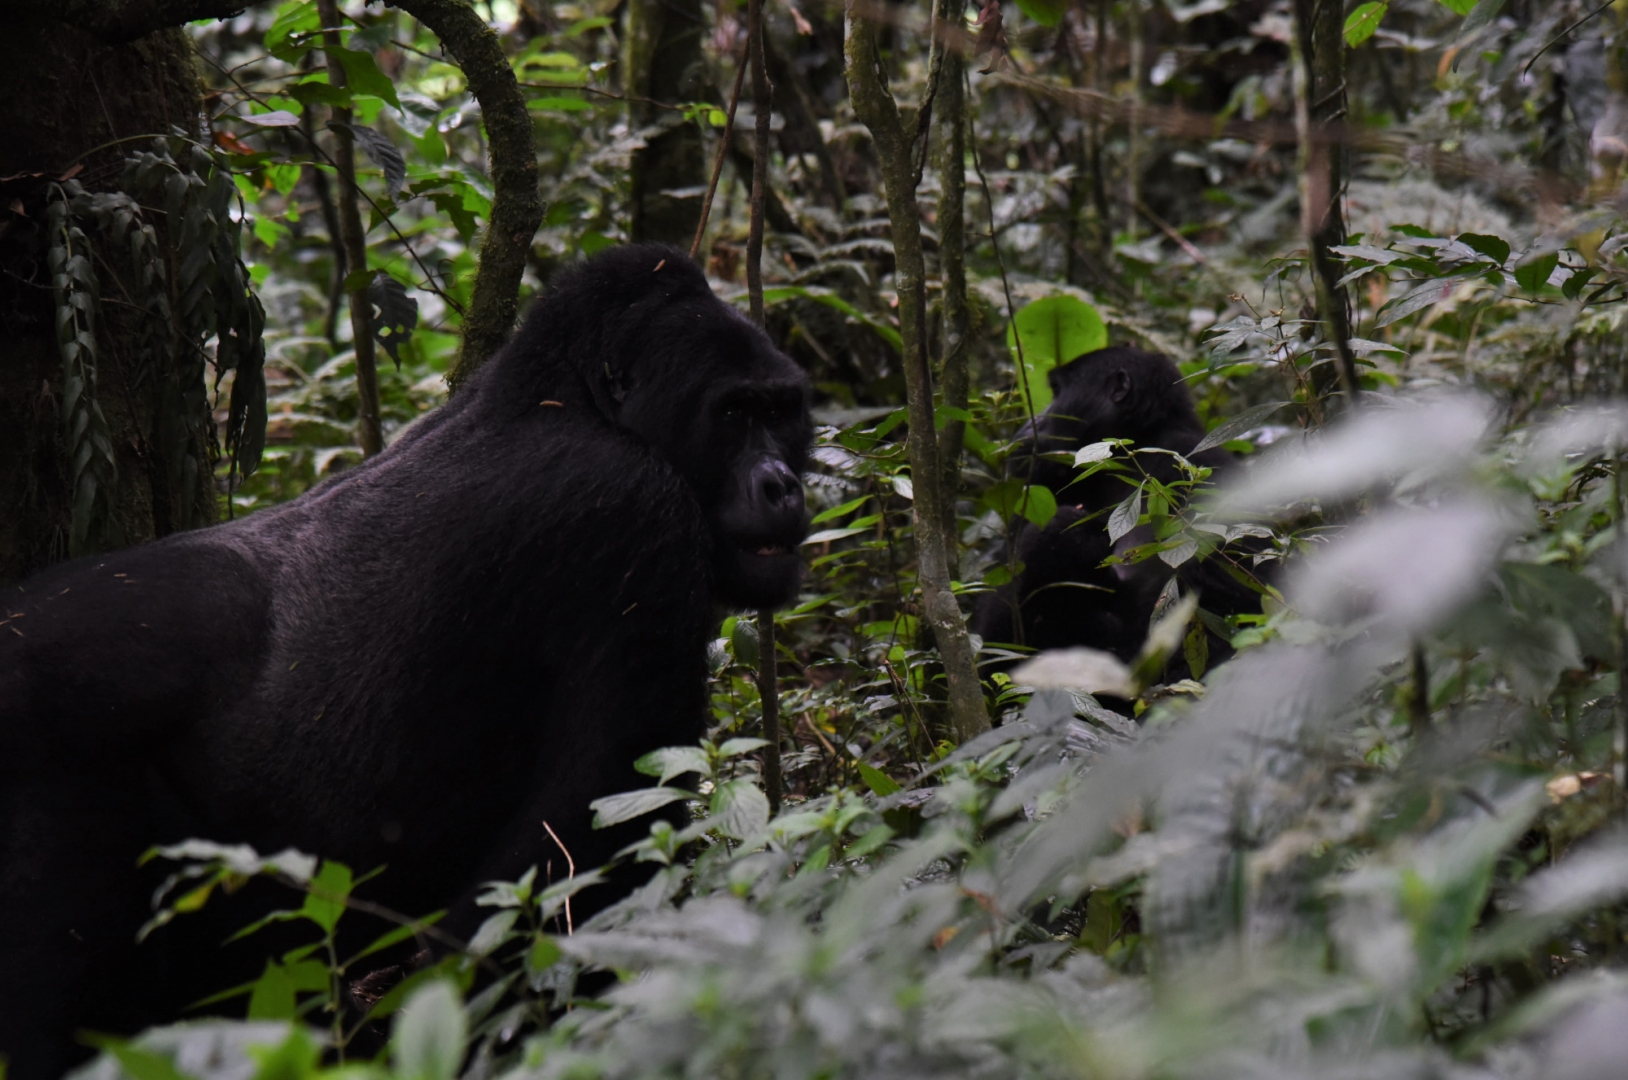 Из-за массы тела, достигающей у самцов до 200 кг, горные гориллы проводят большую часть времени на поверхности земли, передвигаясь на четырёх конечностях